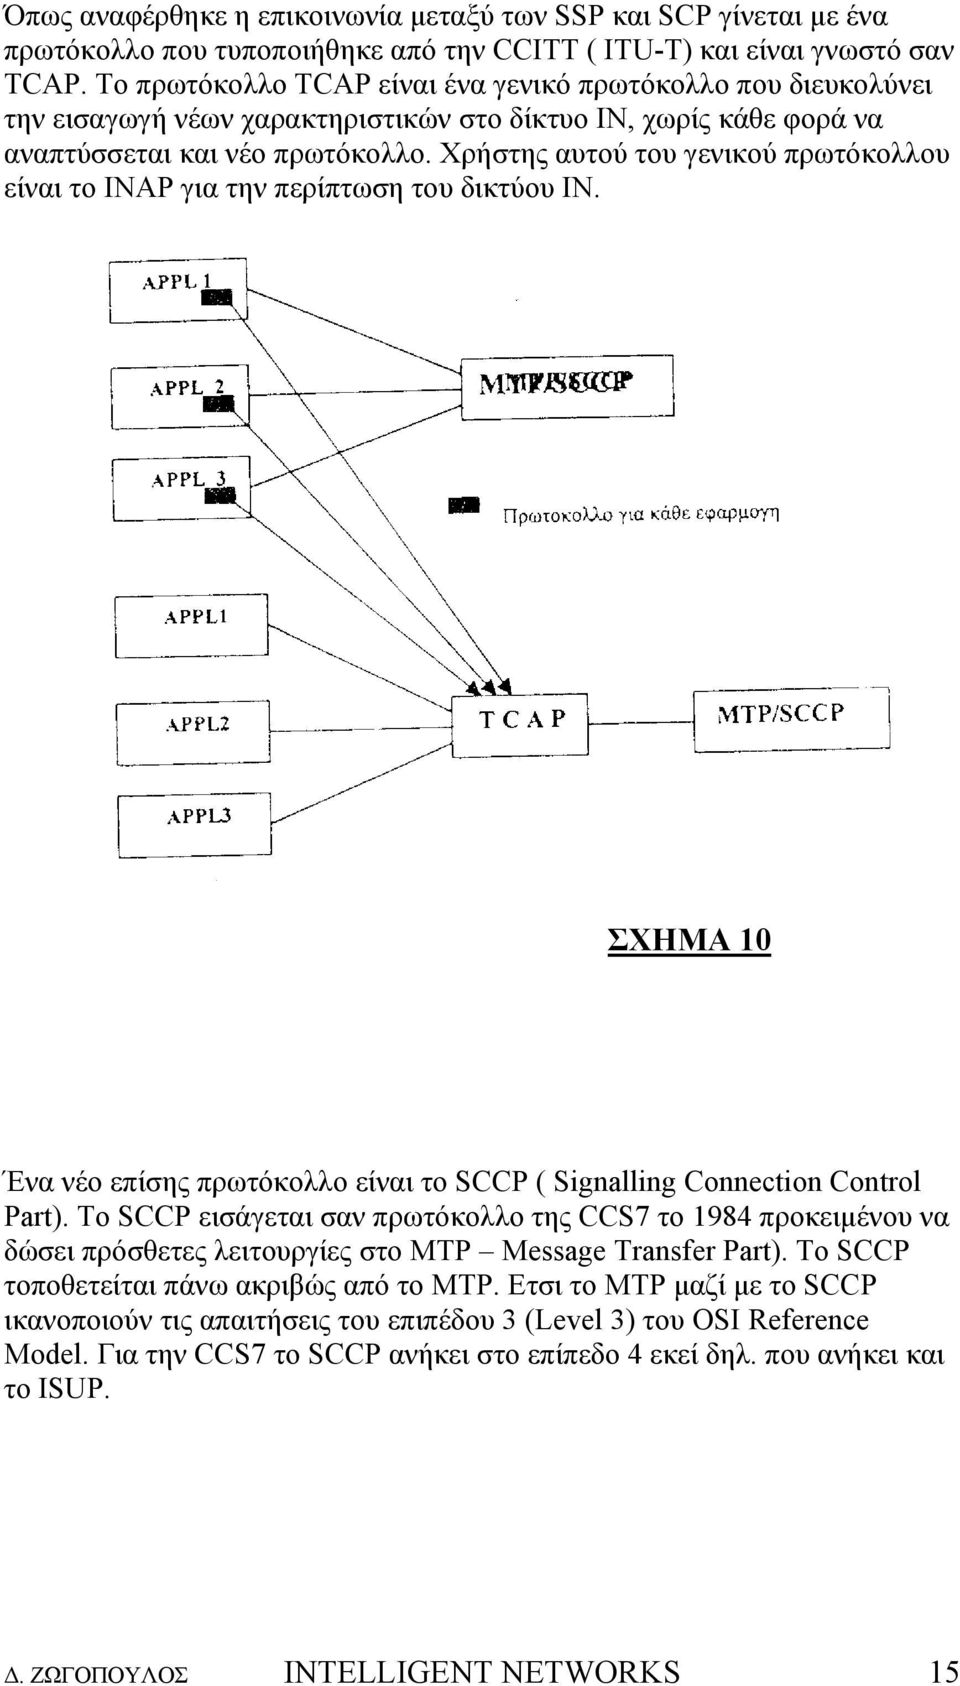 Χρήστης αυτού του γενικού πρωτόκολλου είναι το INAP για την περίπτωση του δικτύου IN. ΣΧΗΜΑ 10 Ένα νέο επίσης πρωτόκολλο είναι το SCCP ( Signalling Connection Control Part).